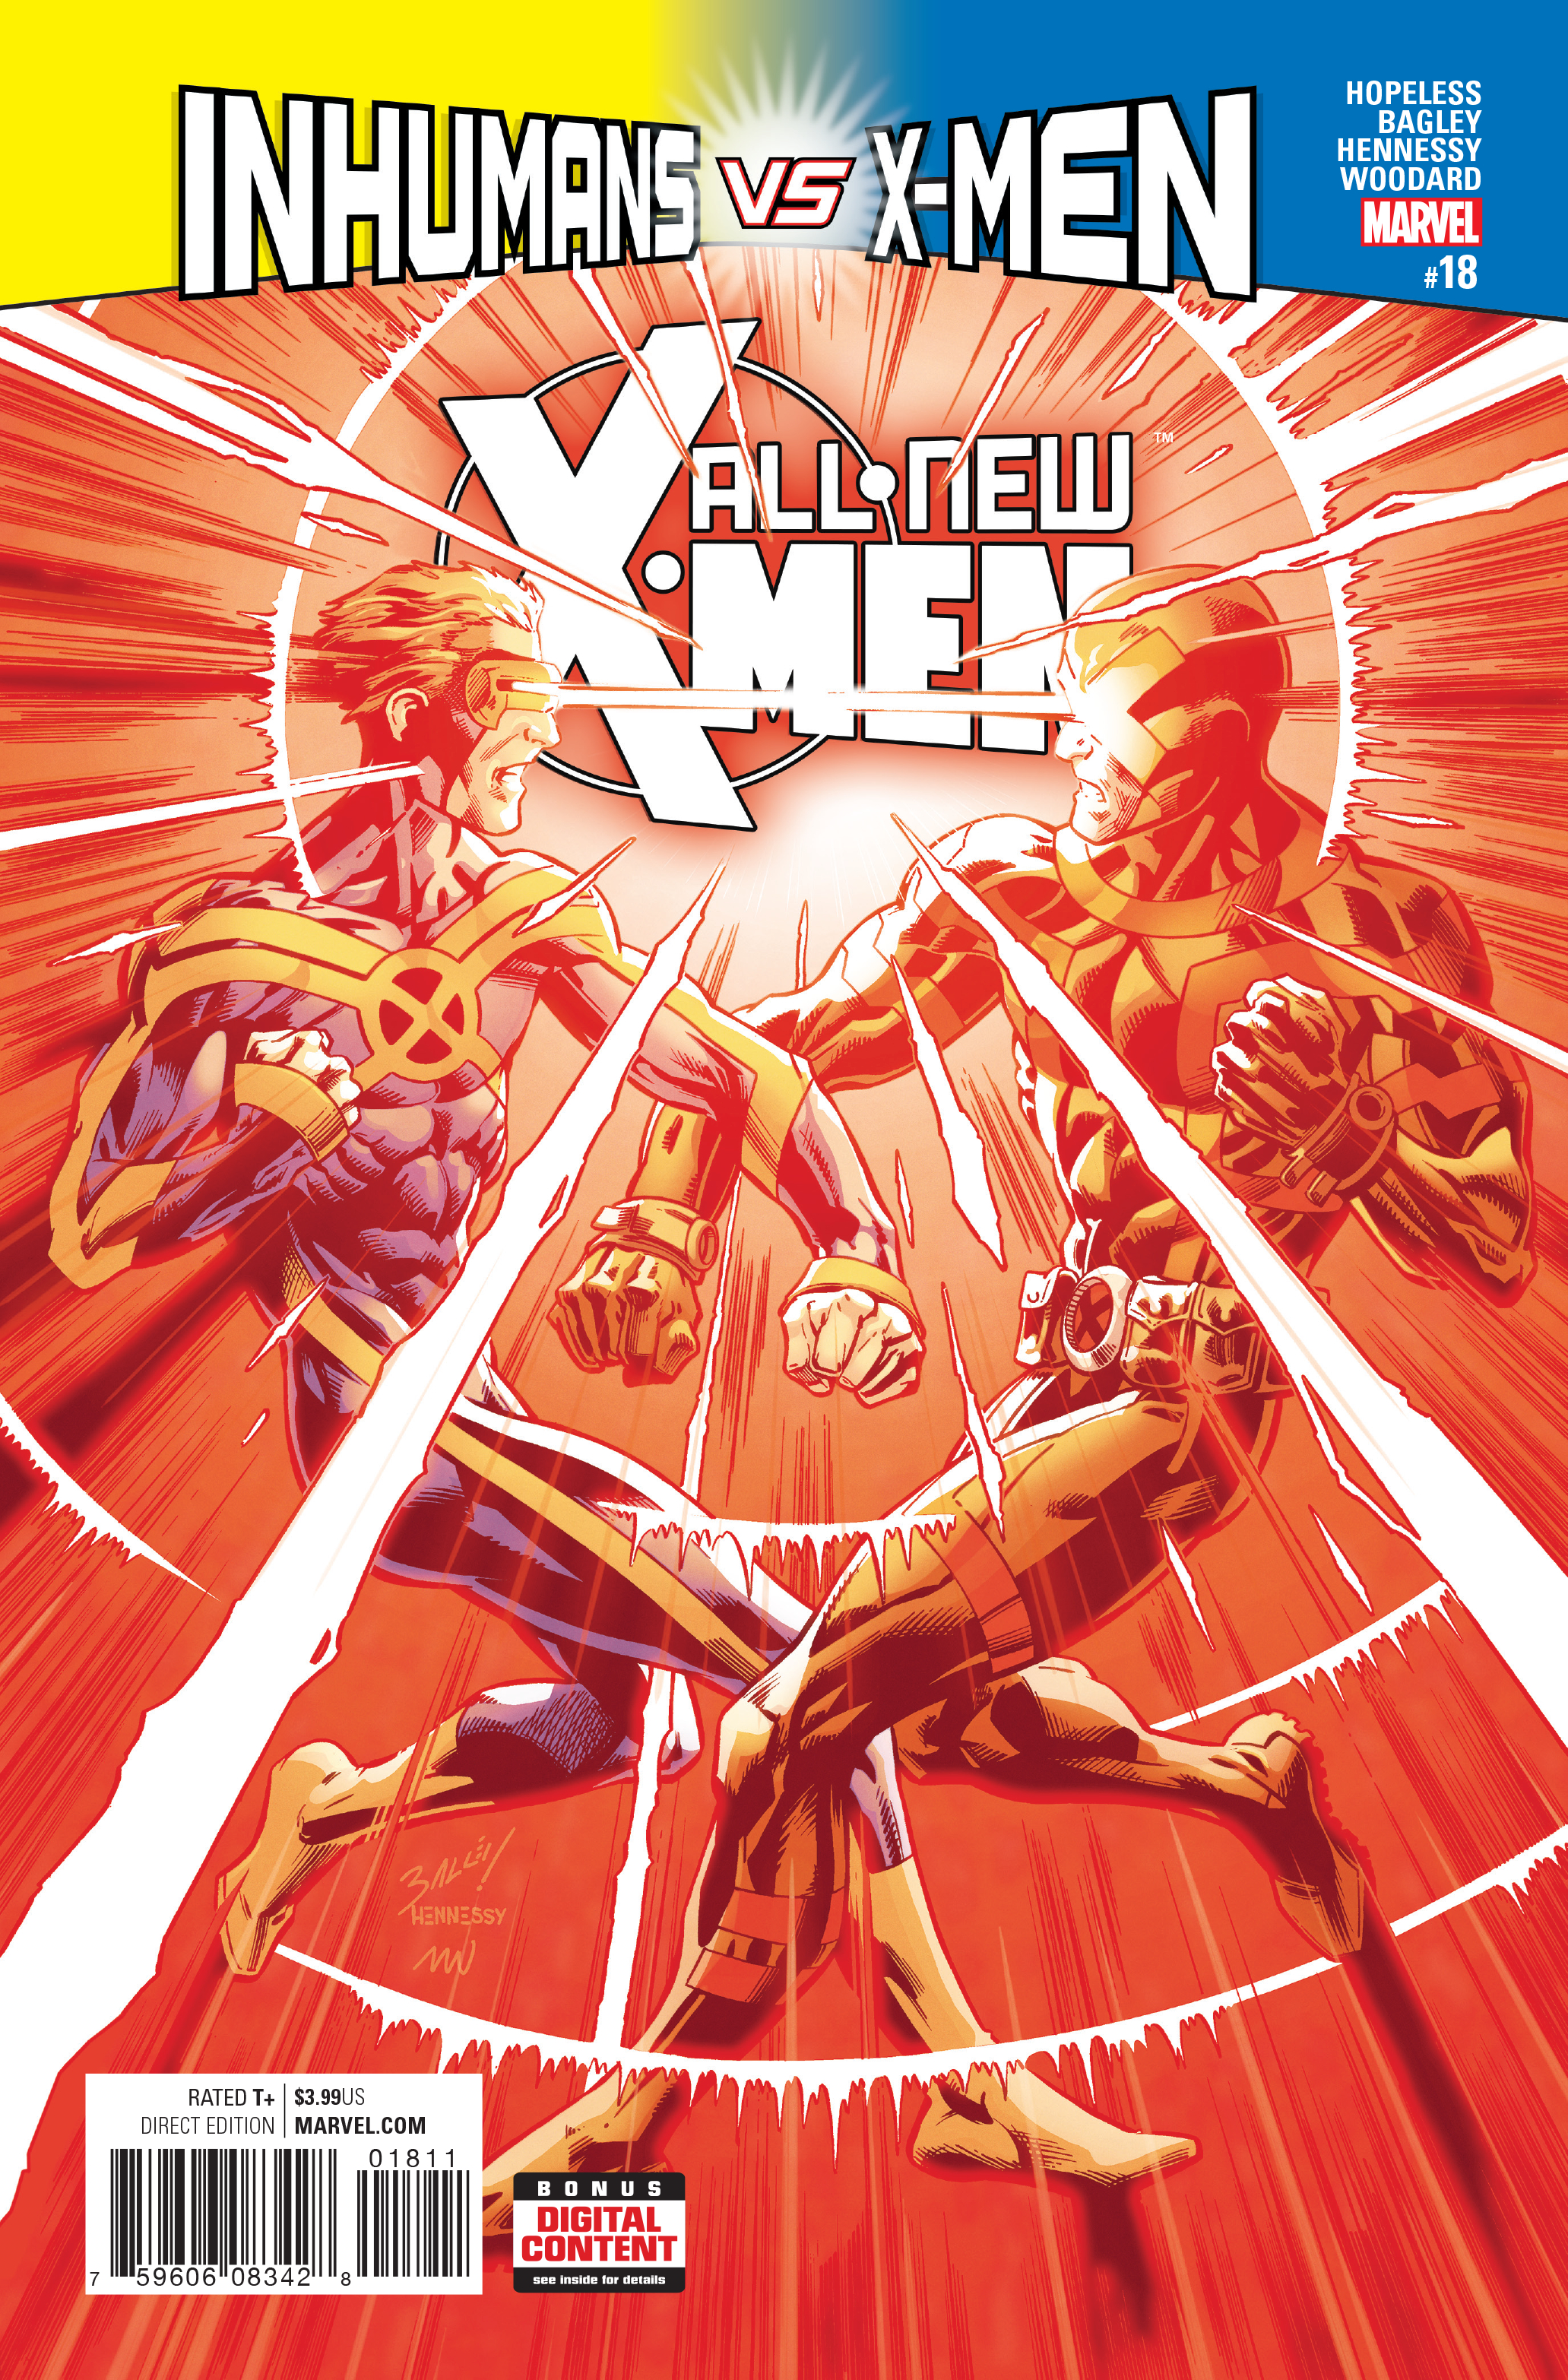 ALL NEW X-MEN #18 IVX